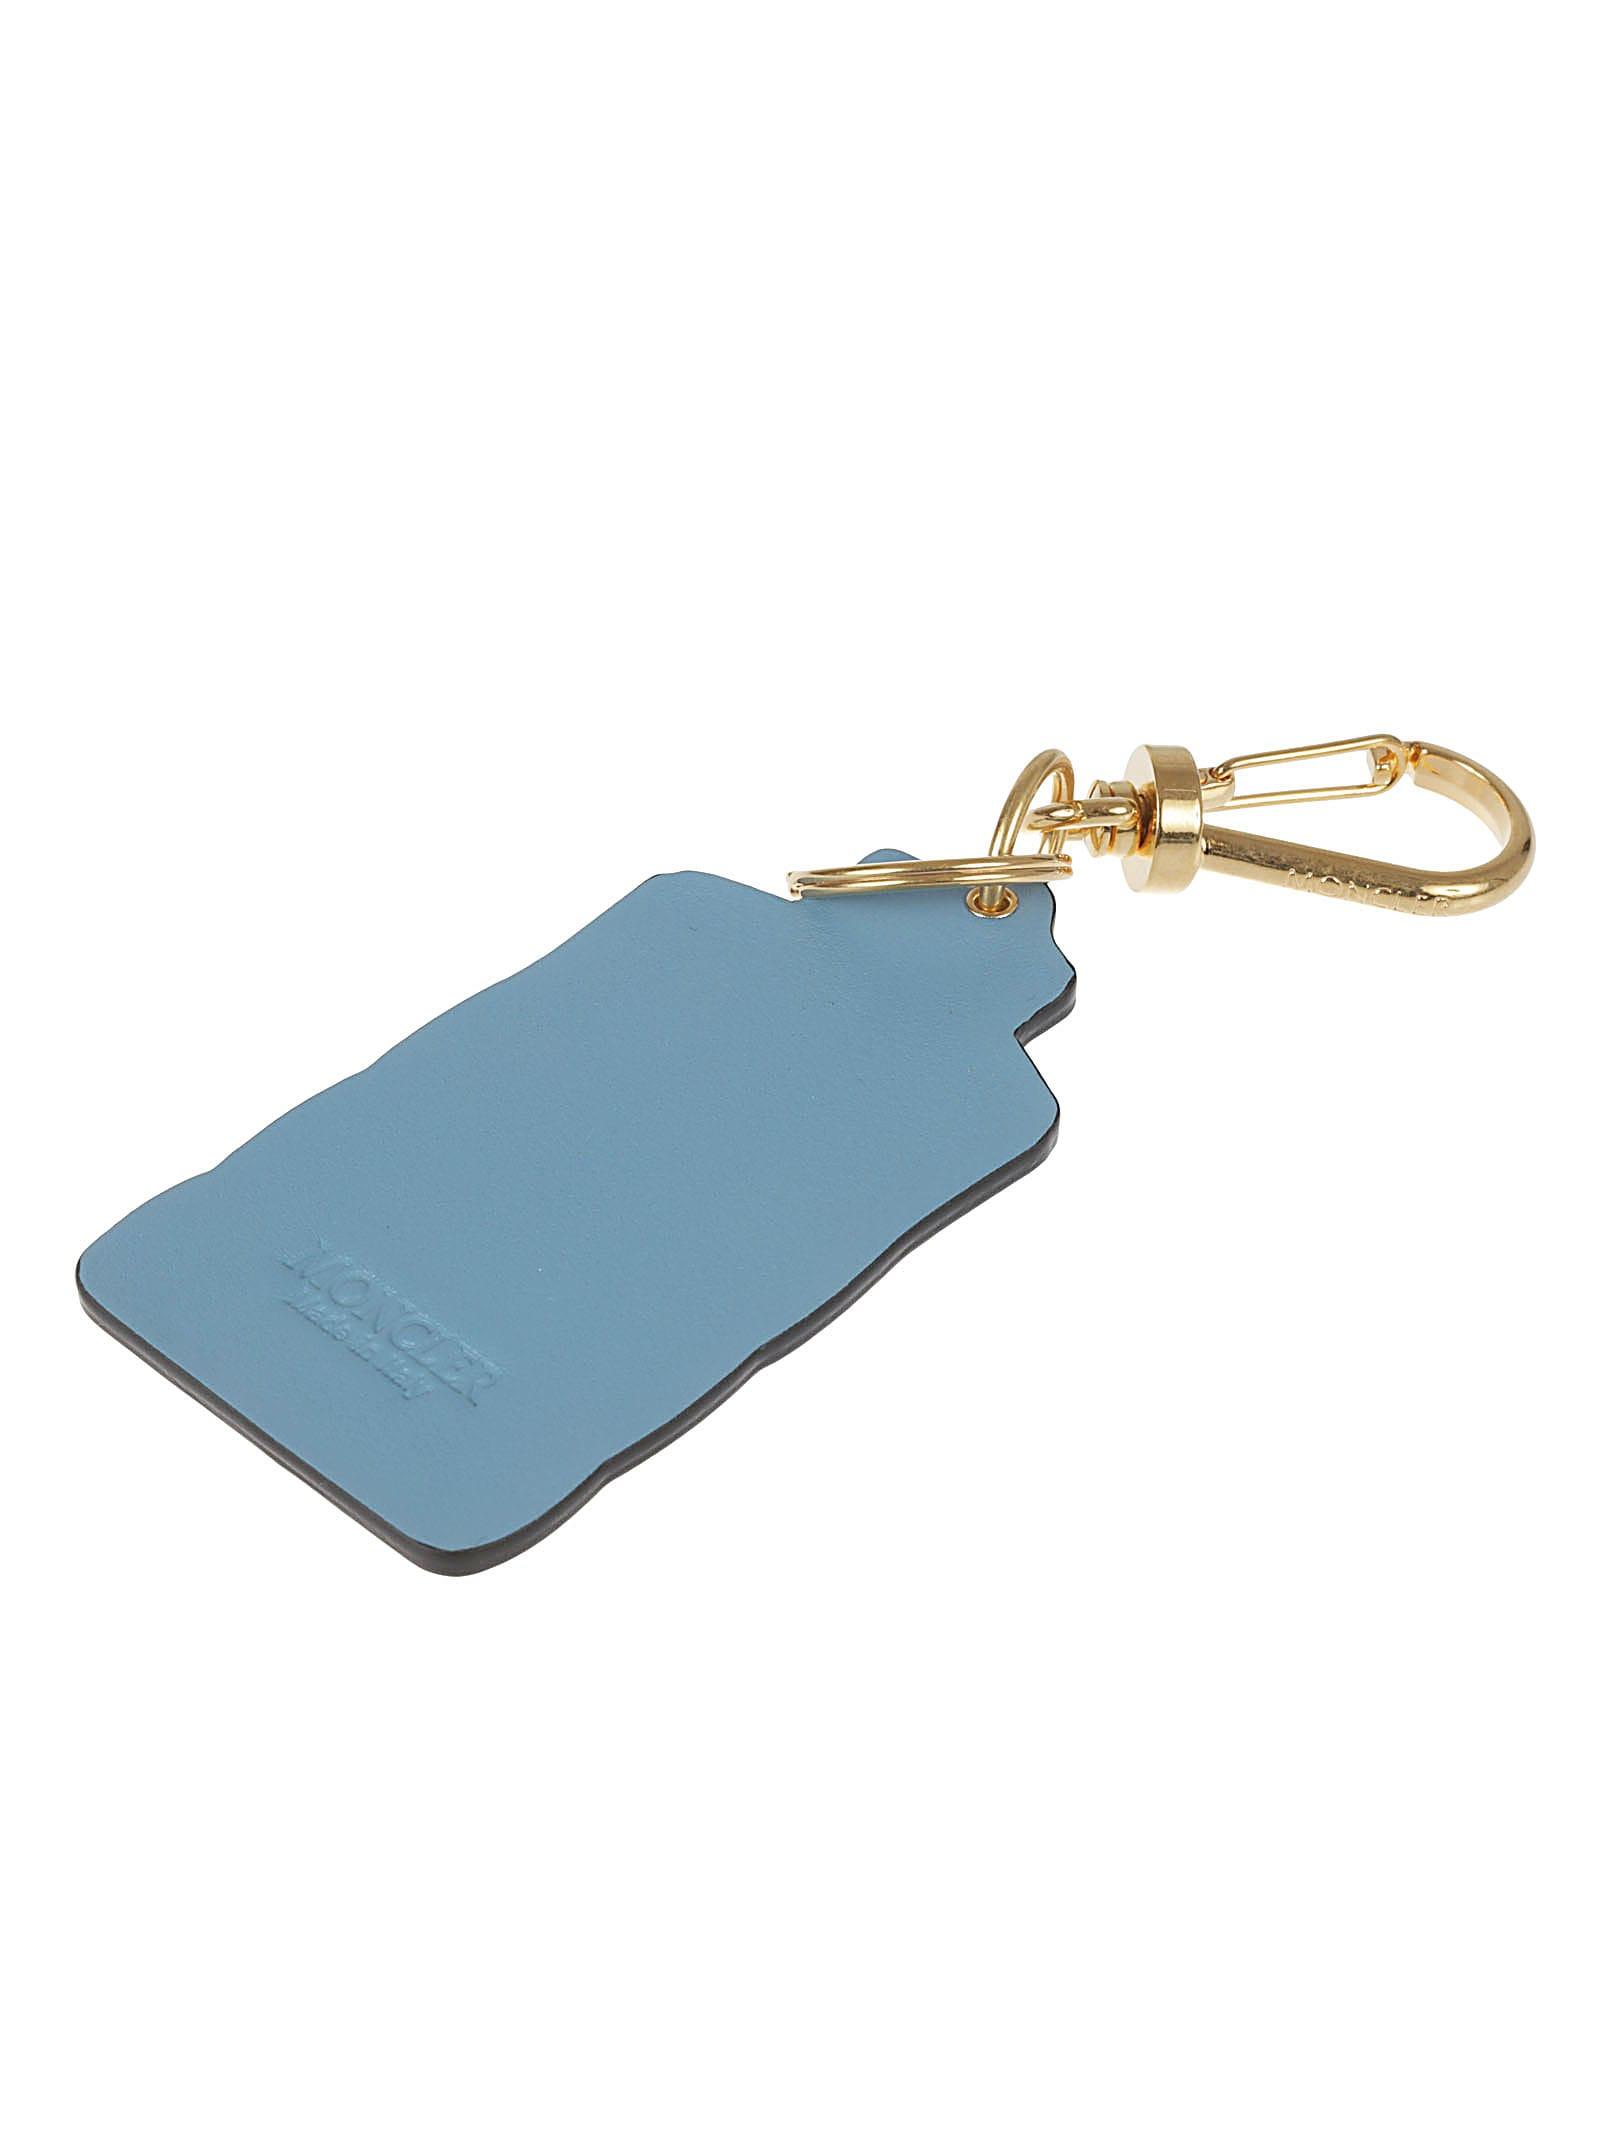 Moncler Vest Key Ring in Blue | Lyst